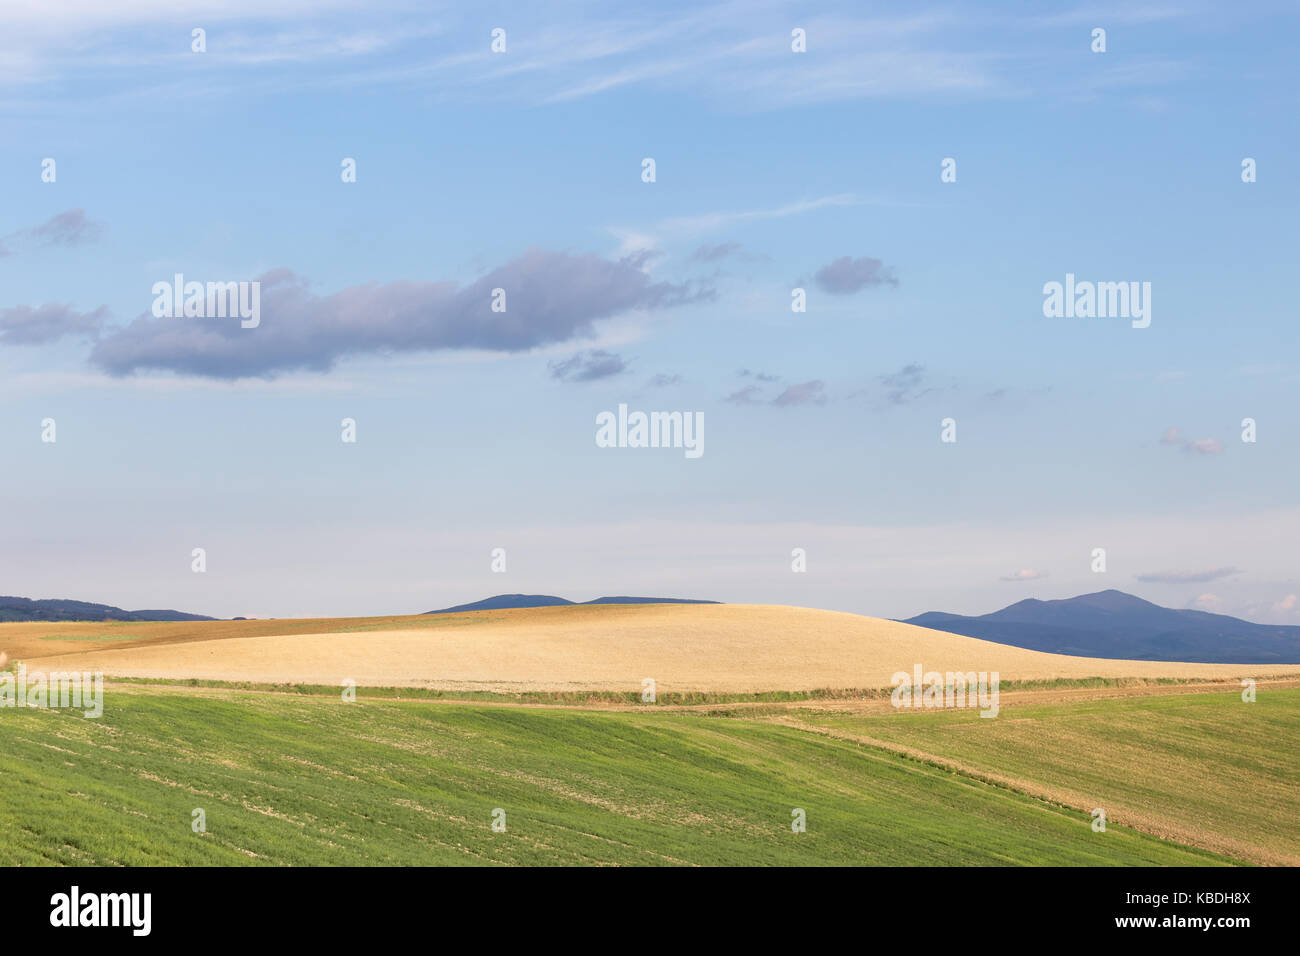 Les champs cultivés en vert et jaune, avec ciel bleu et les montagnes en arrière-plan Banque D'Images